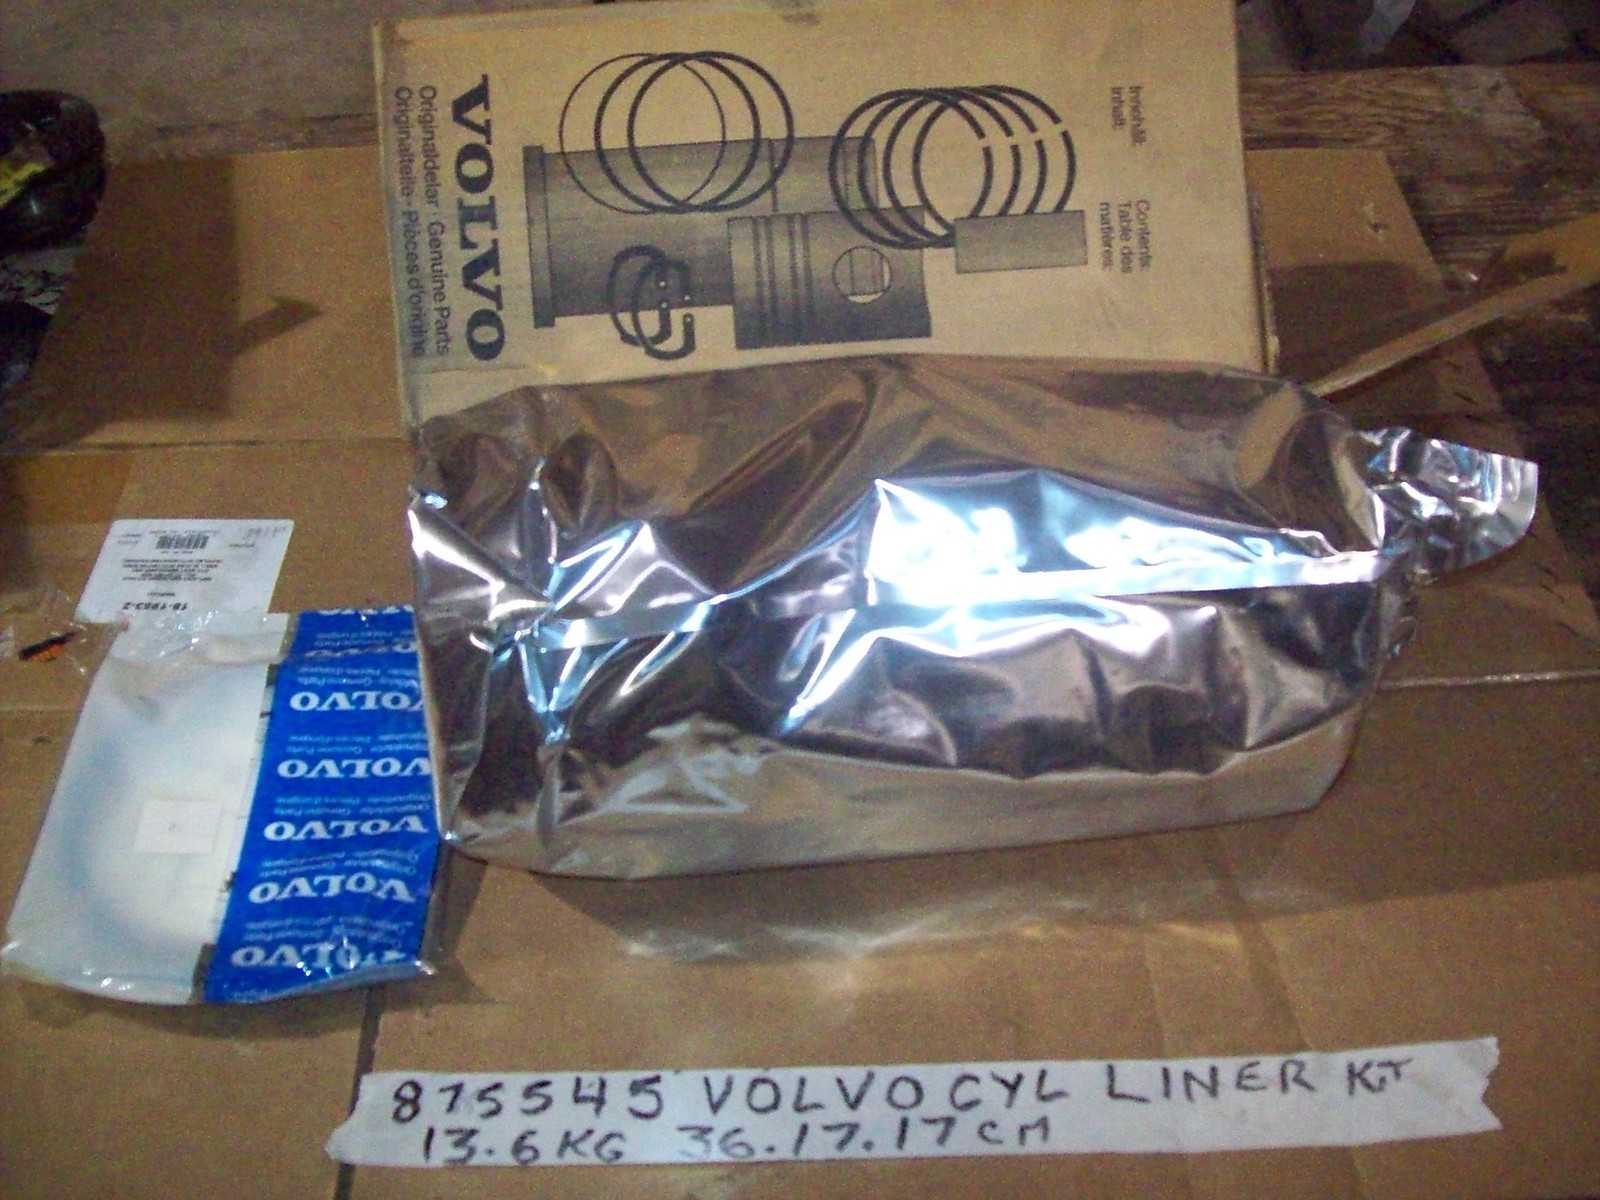 Volvo 875545 Cylinder liner kit